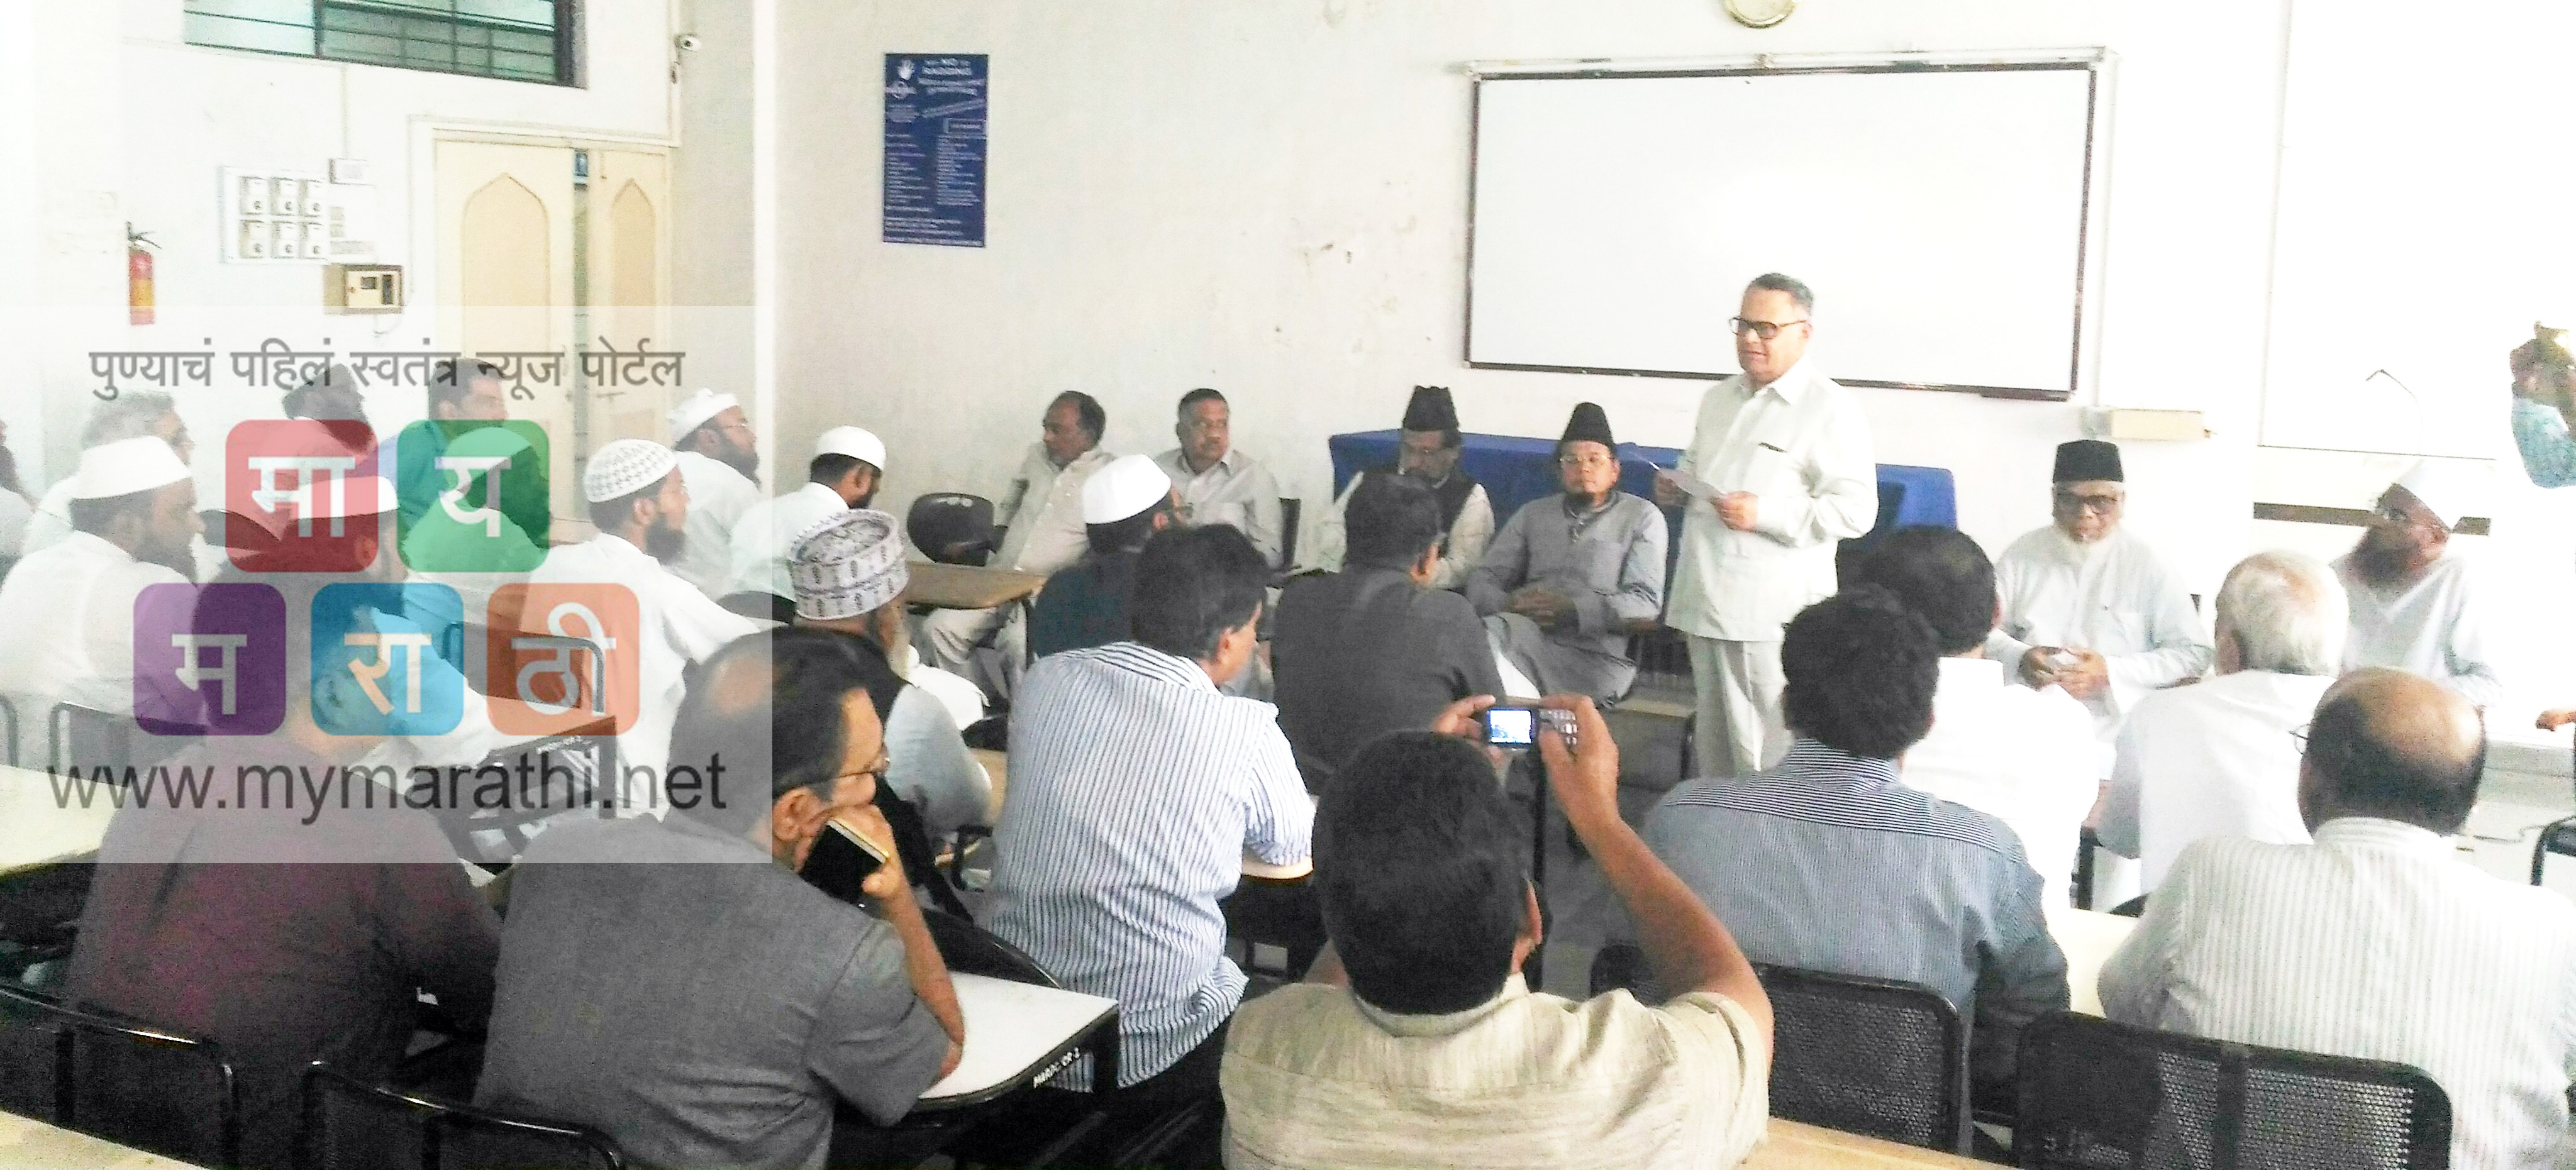 लष्करी उपायांसह ‘अखंड भारत’ करा: मुस्लीम संघटना, मौलवींच्या बैठकीत ठराव